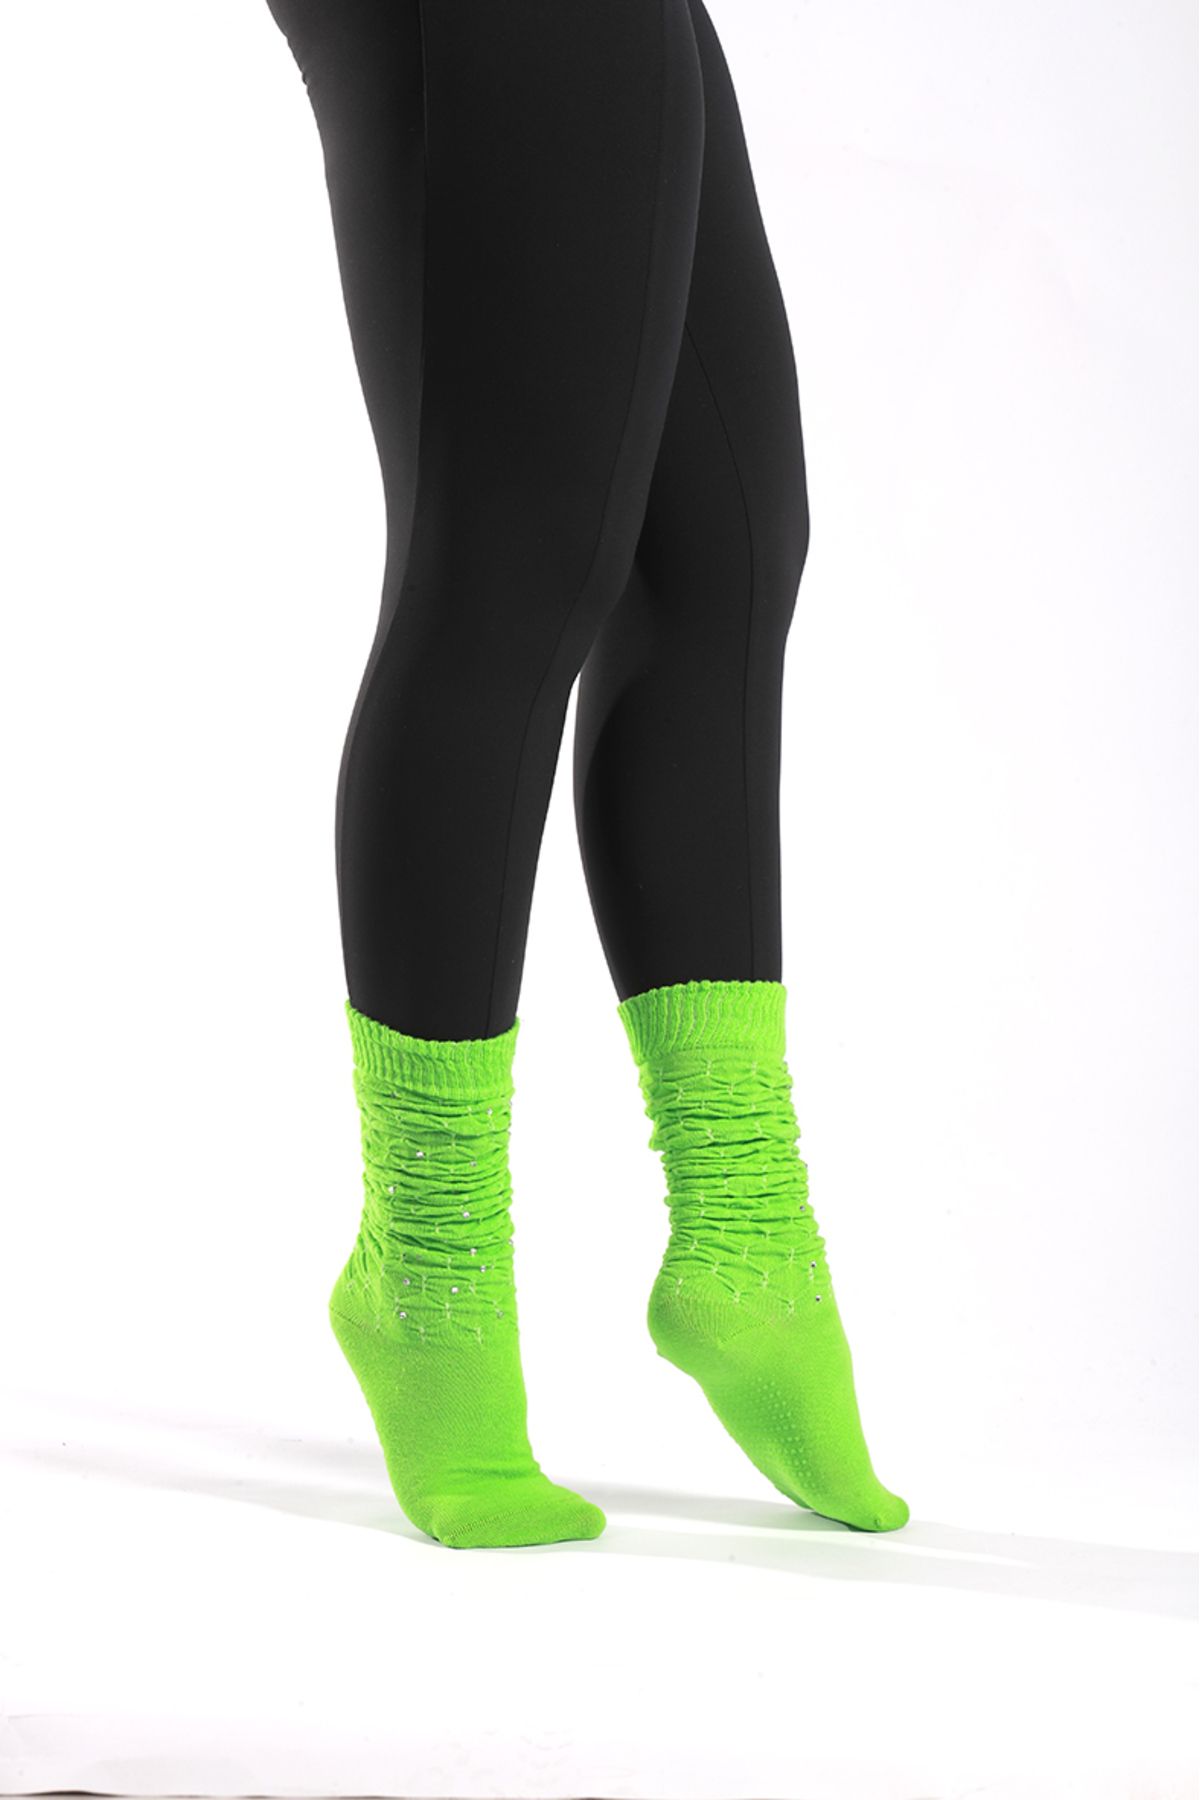 Muse Of Socks Fully Caldo Yeşil Kaydırmaz Pilates Ve Yoga Çorabı